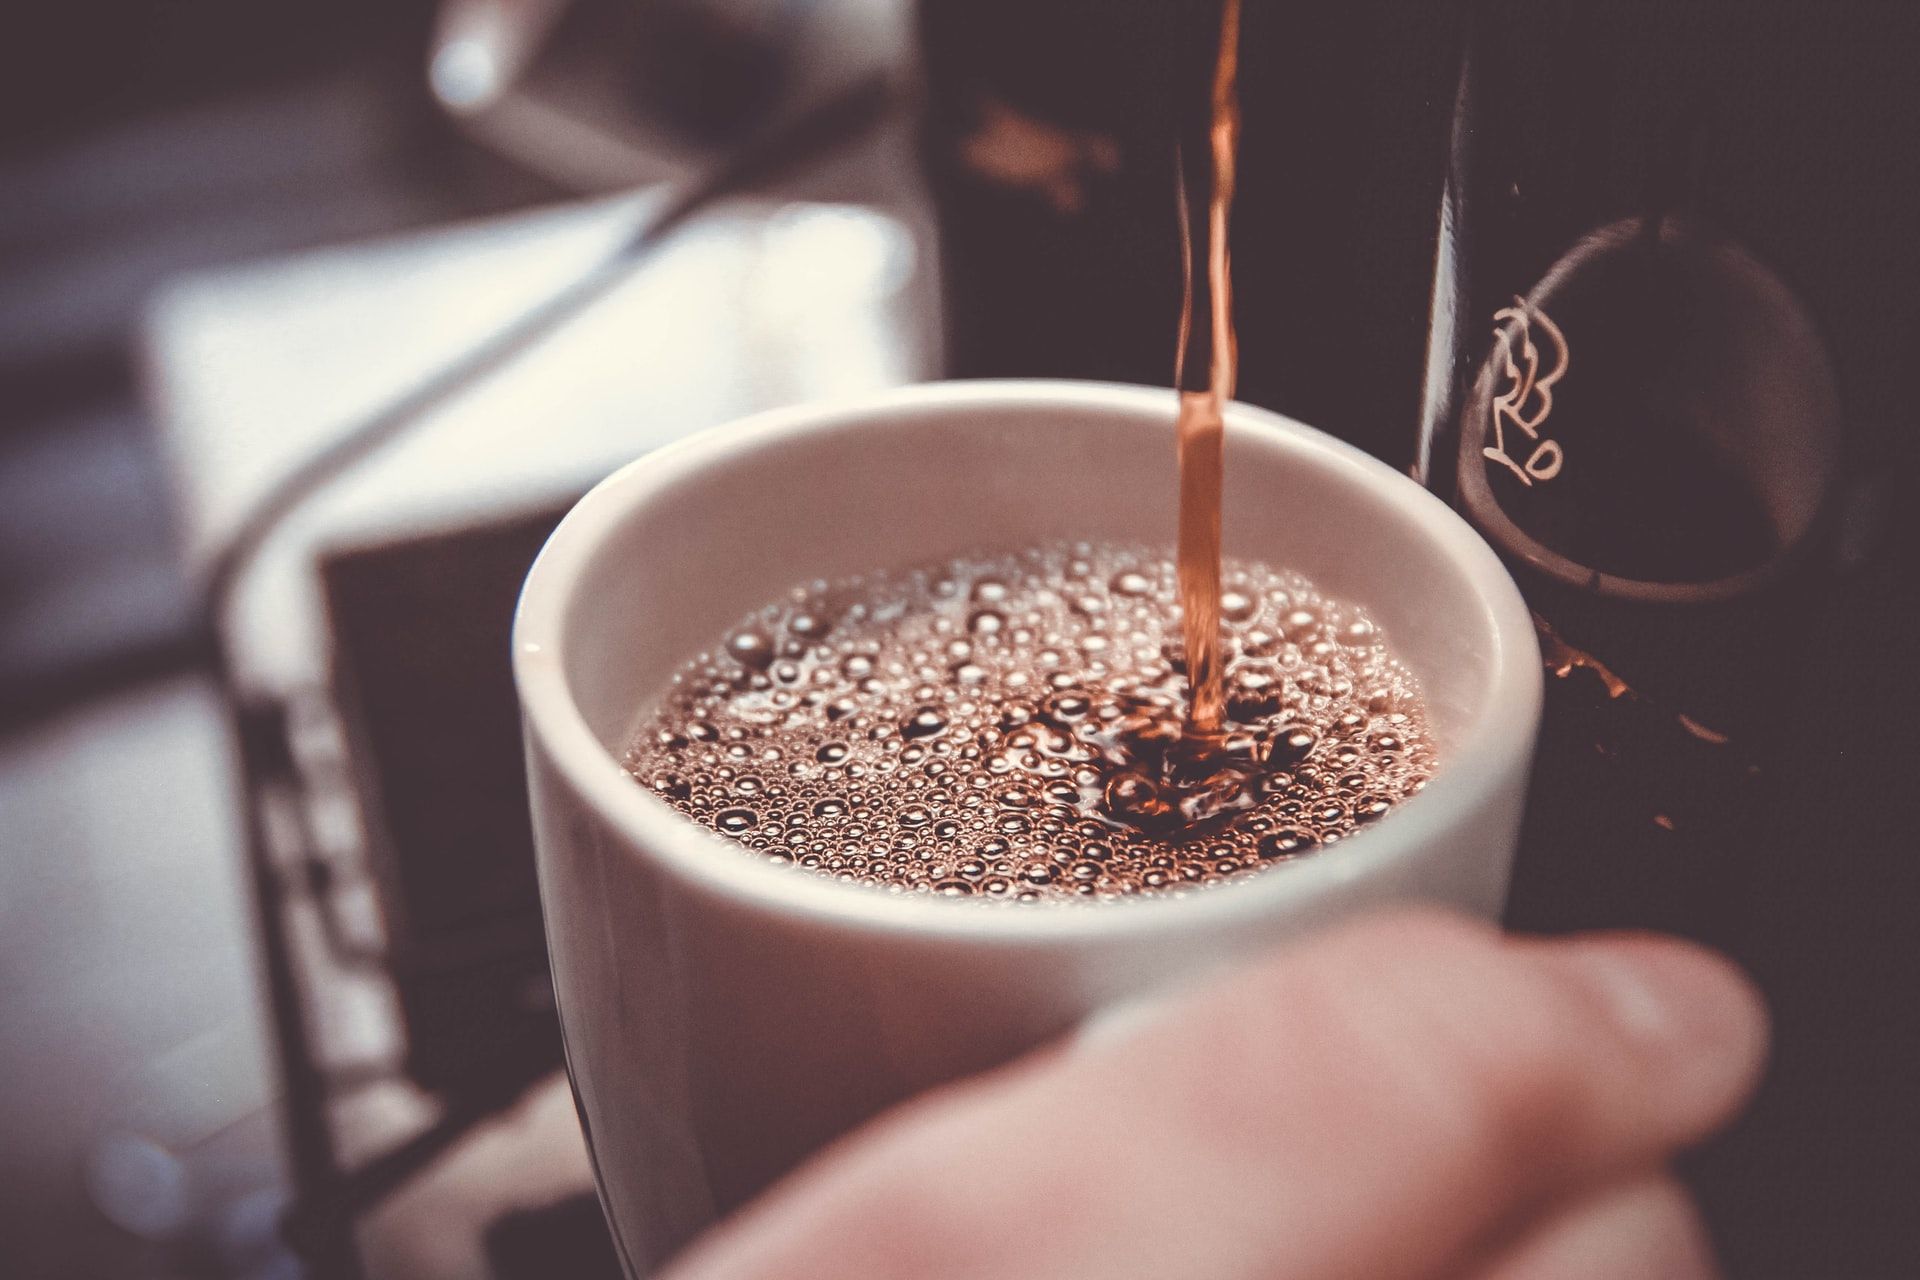 Вживання кави на ніч не впливає на сон, але змінює структуру мозку: дослідження